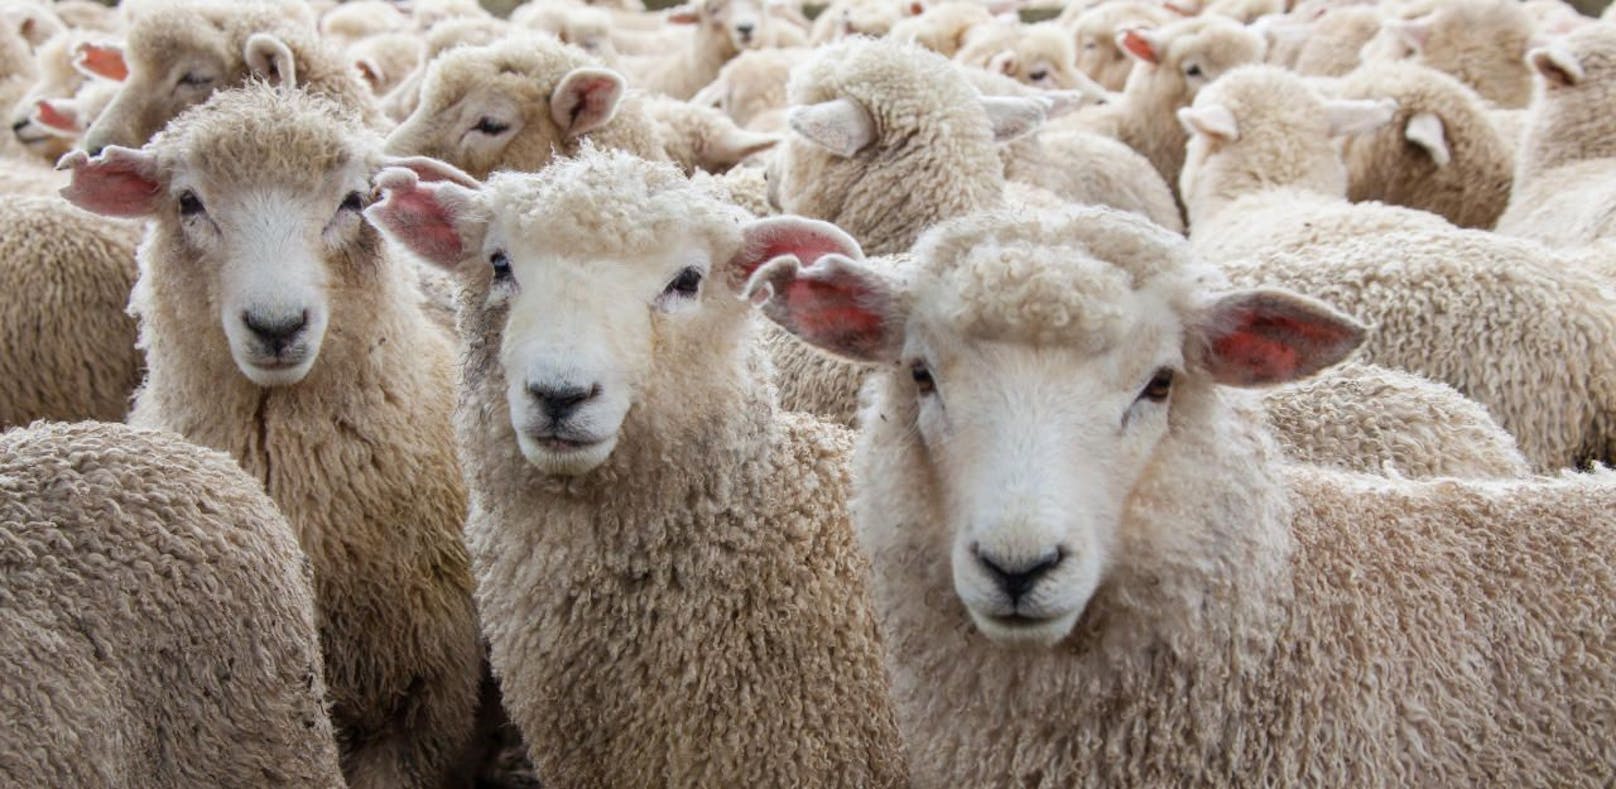 Schaf-Schlachtungen in Hinterhöfen? Die TKG verweist auf den heimischen Handel.